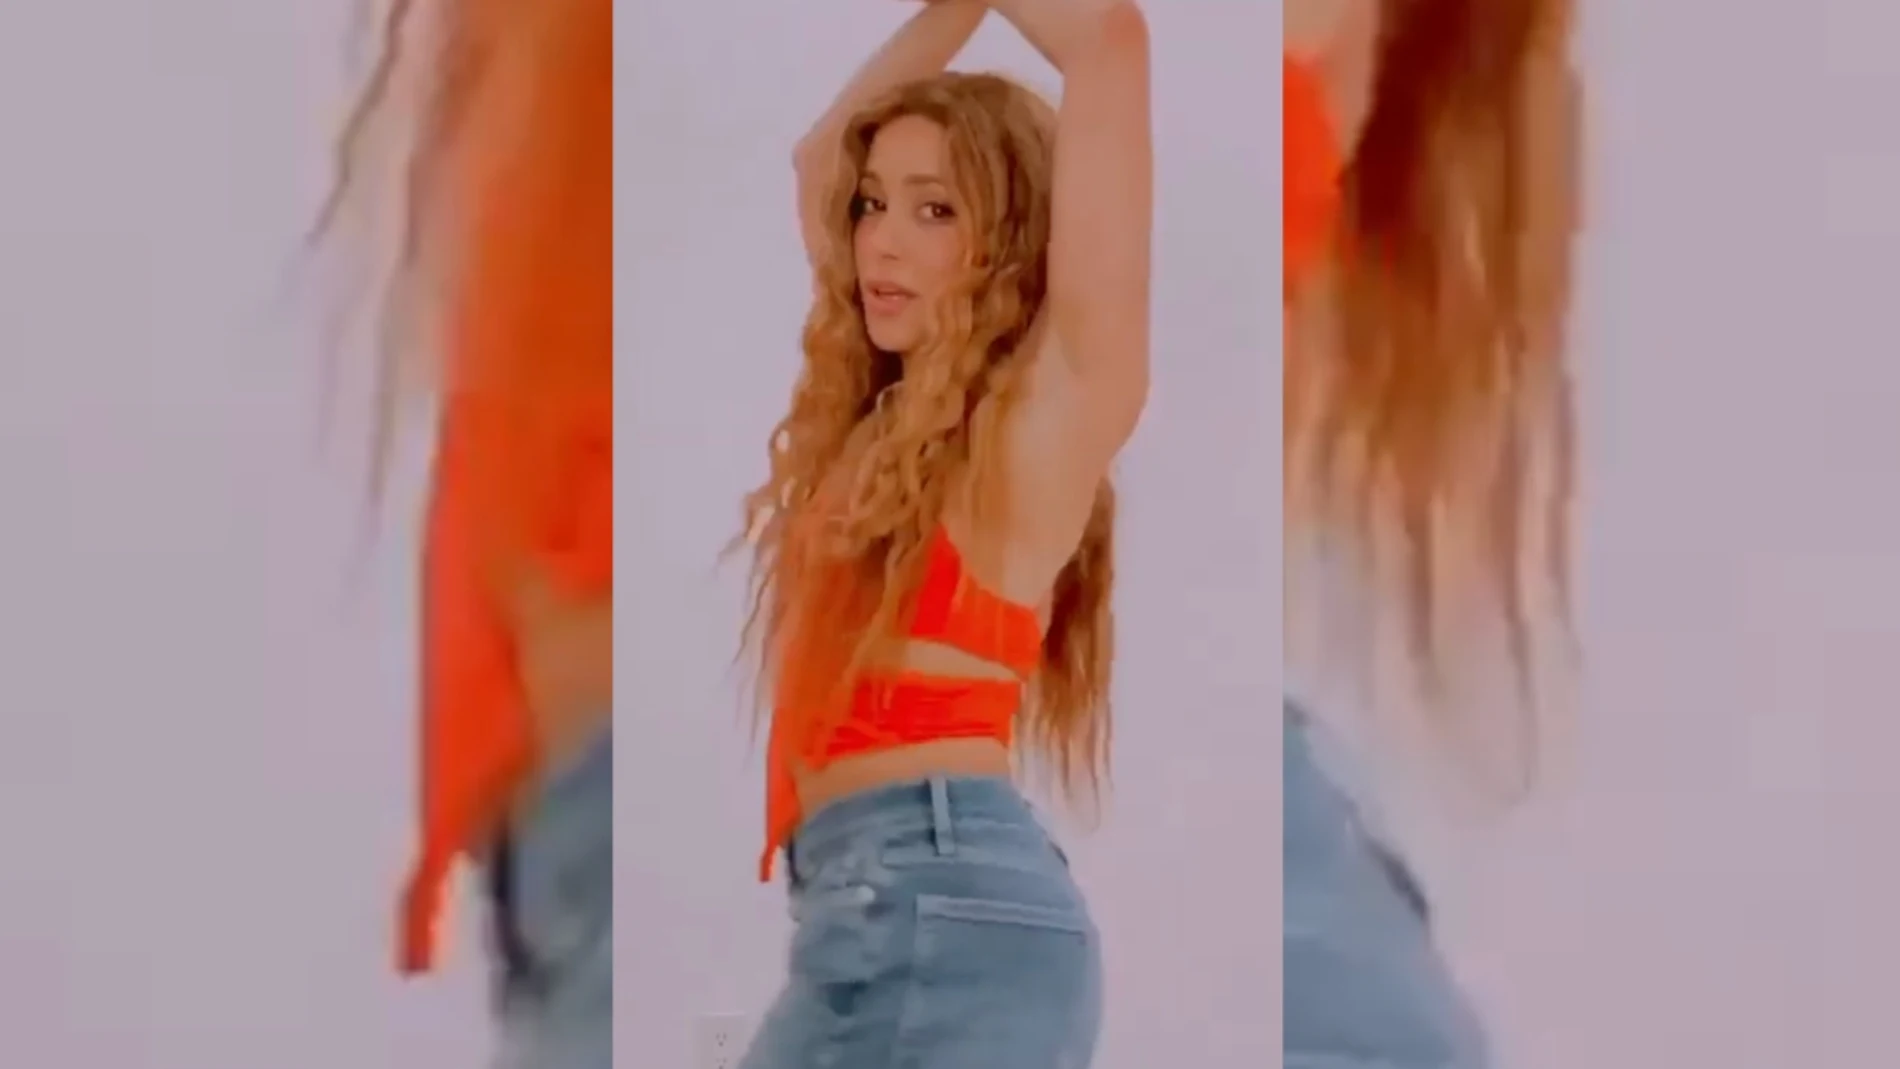 Shakira en su Instagram bailando 'Copa vacía'